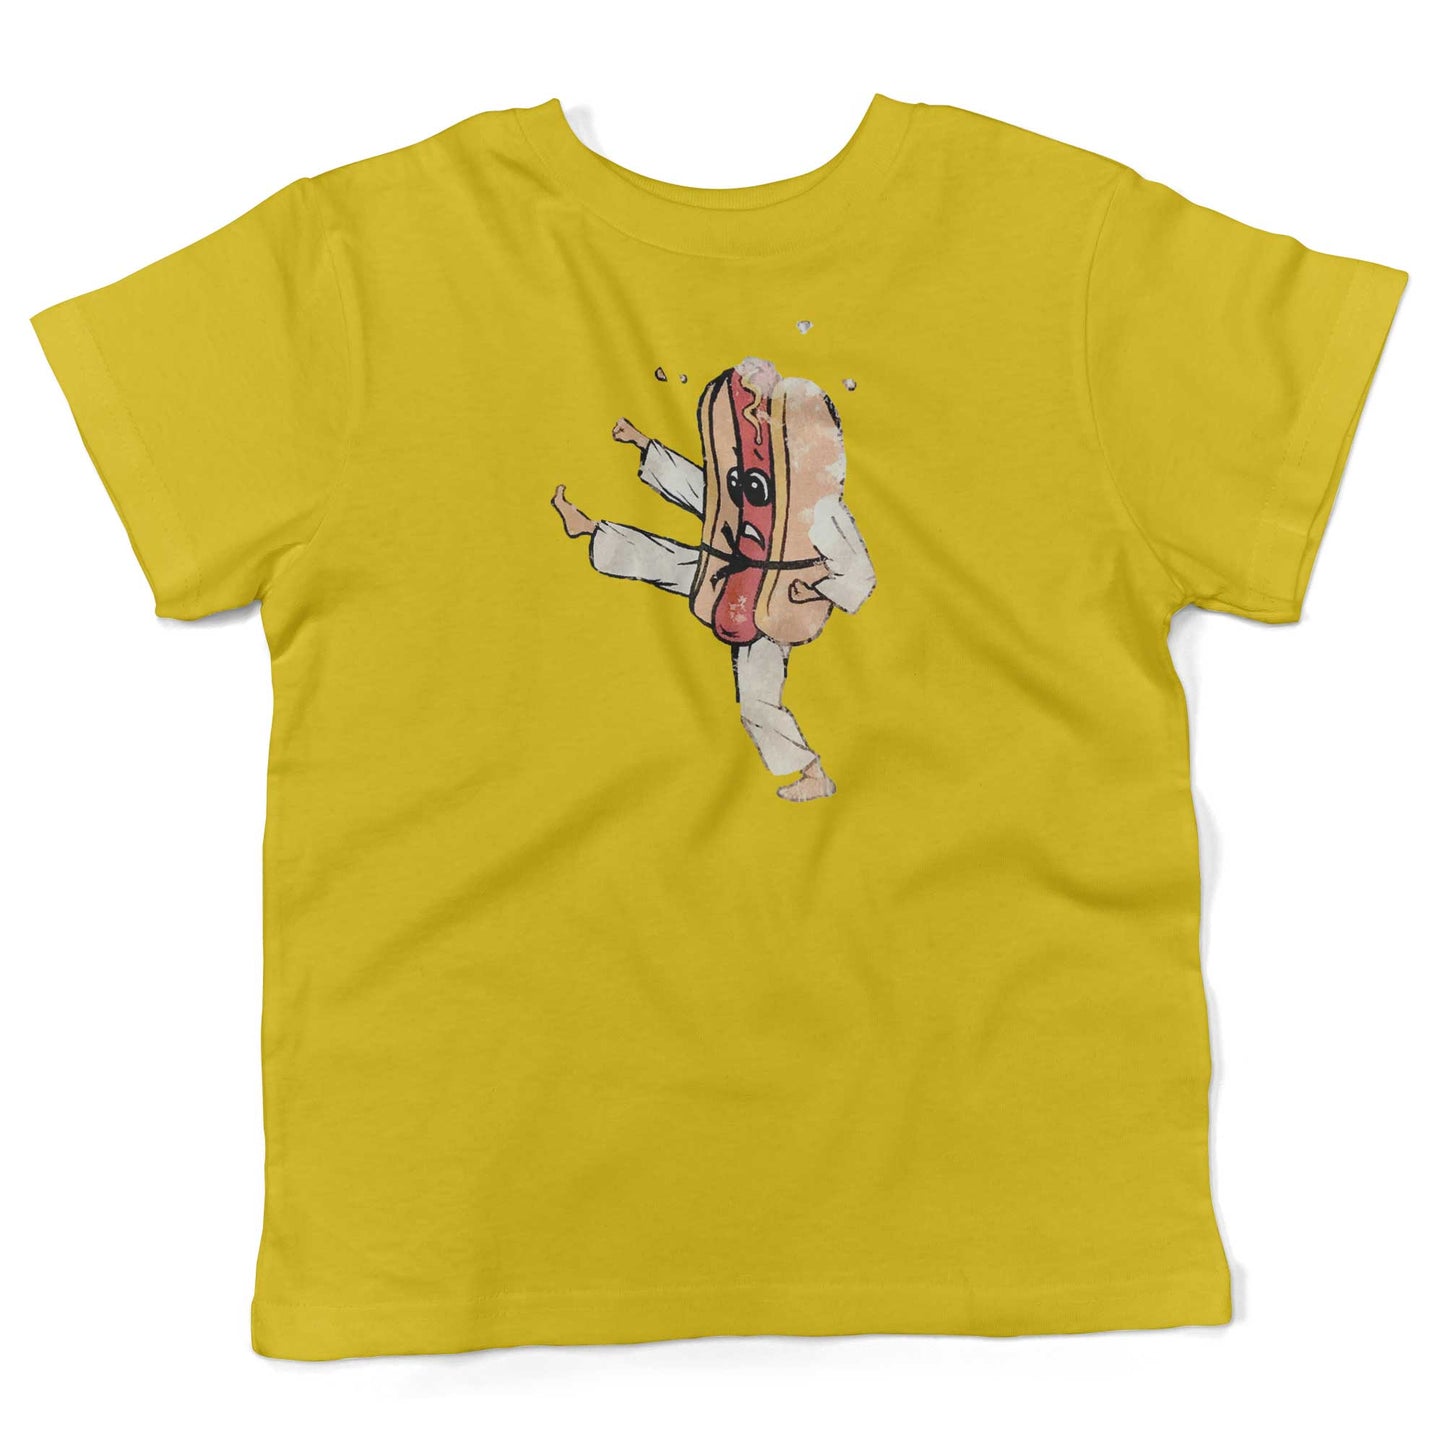 Vintage Hot Dog Toddler Shirt-Sunshine Yellow-2T